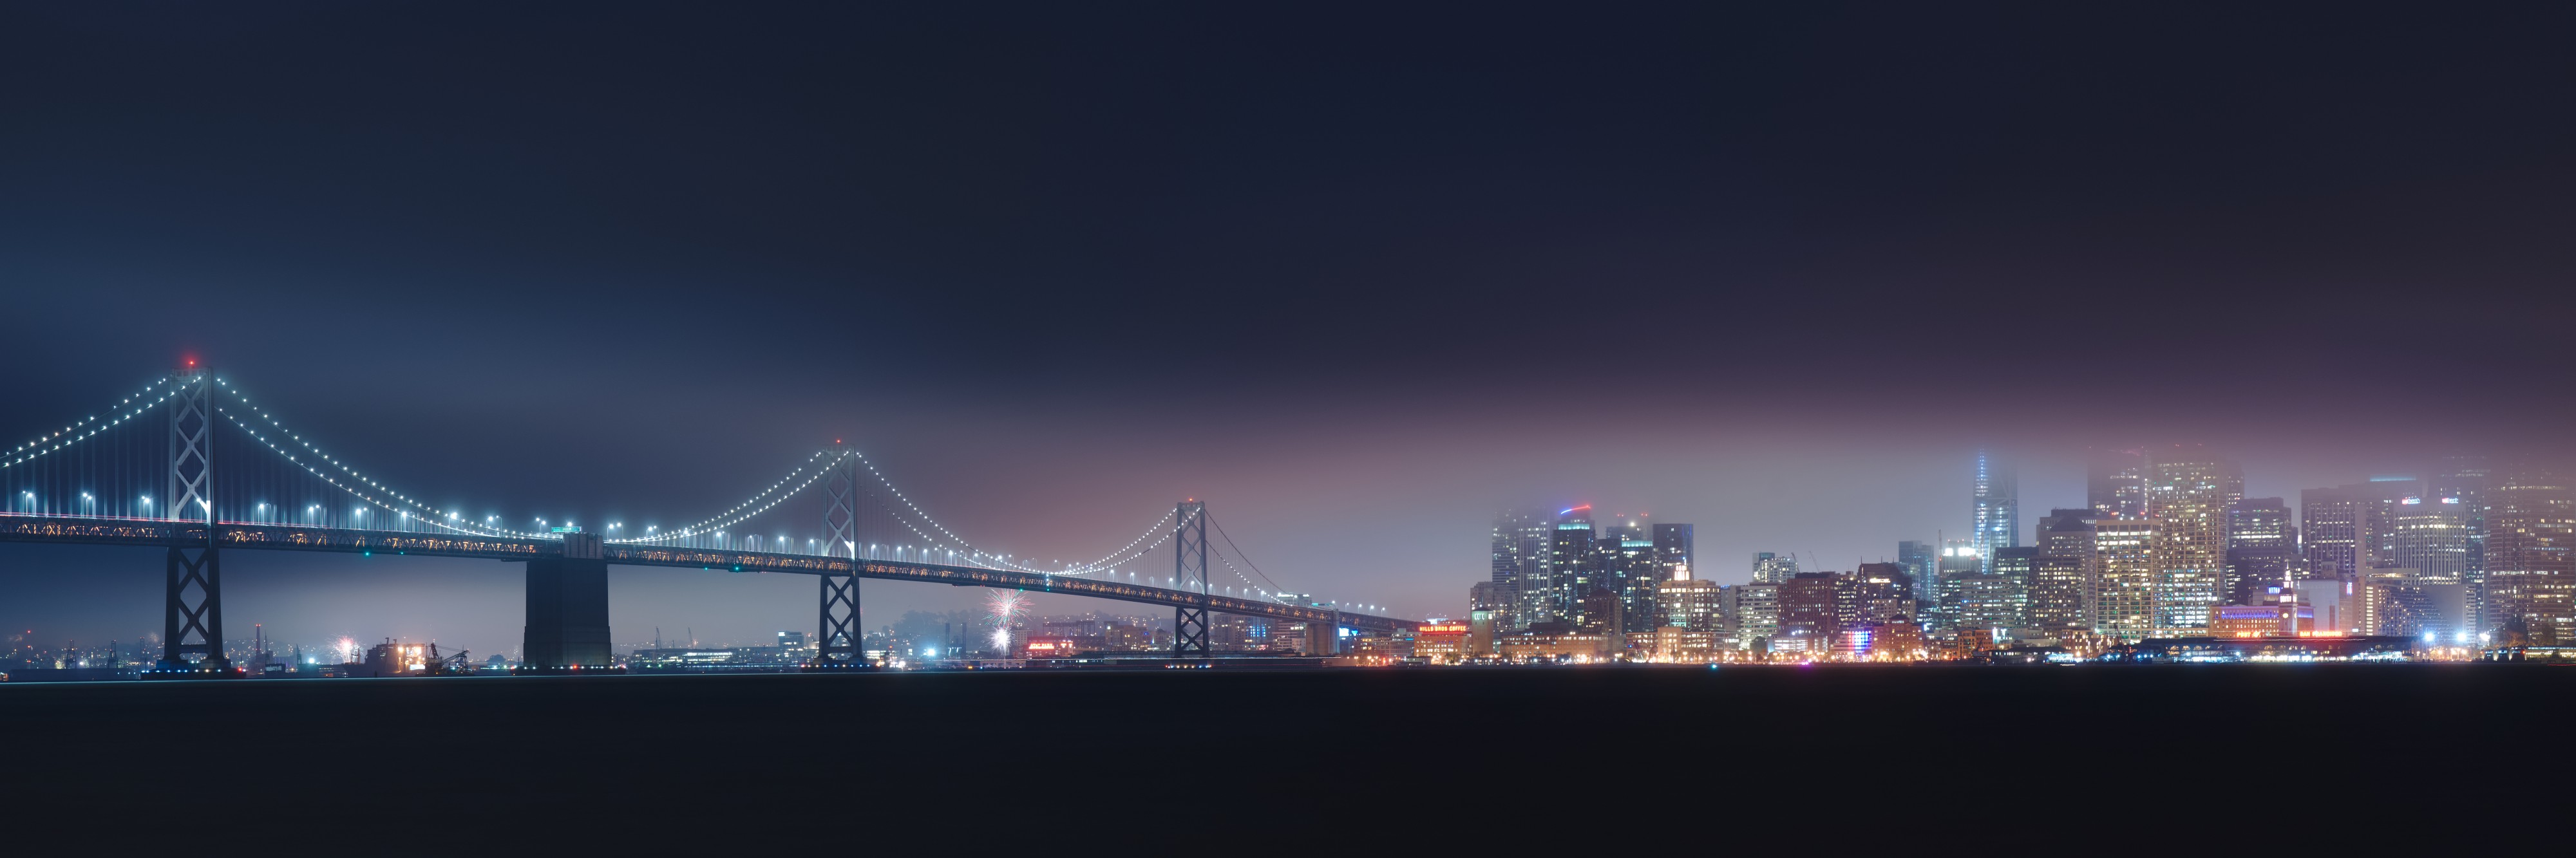 San Francisco skyline on a foggy 4th of July night